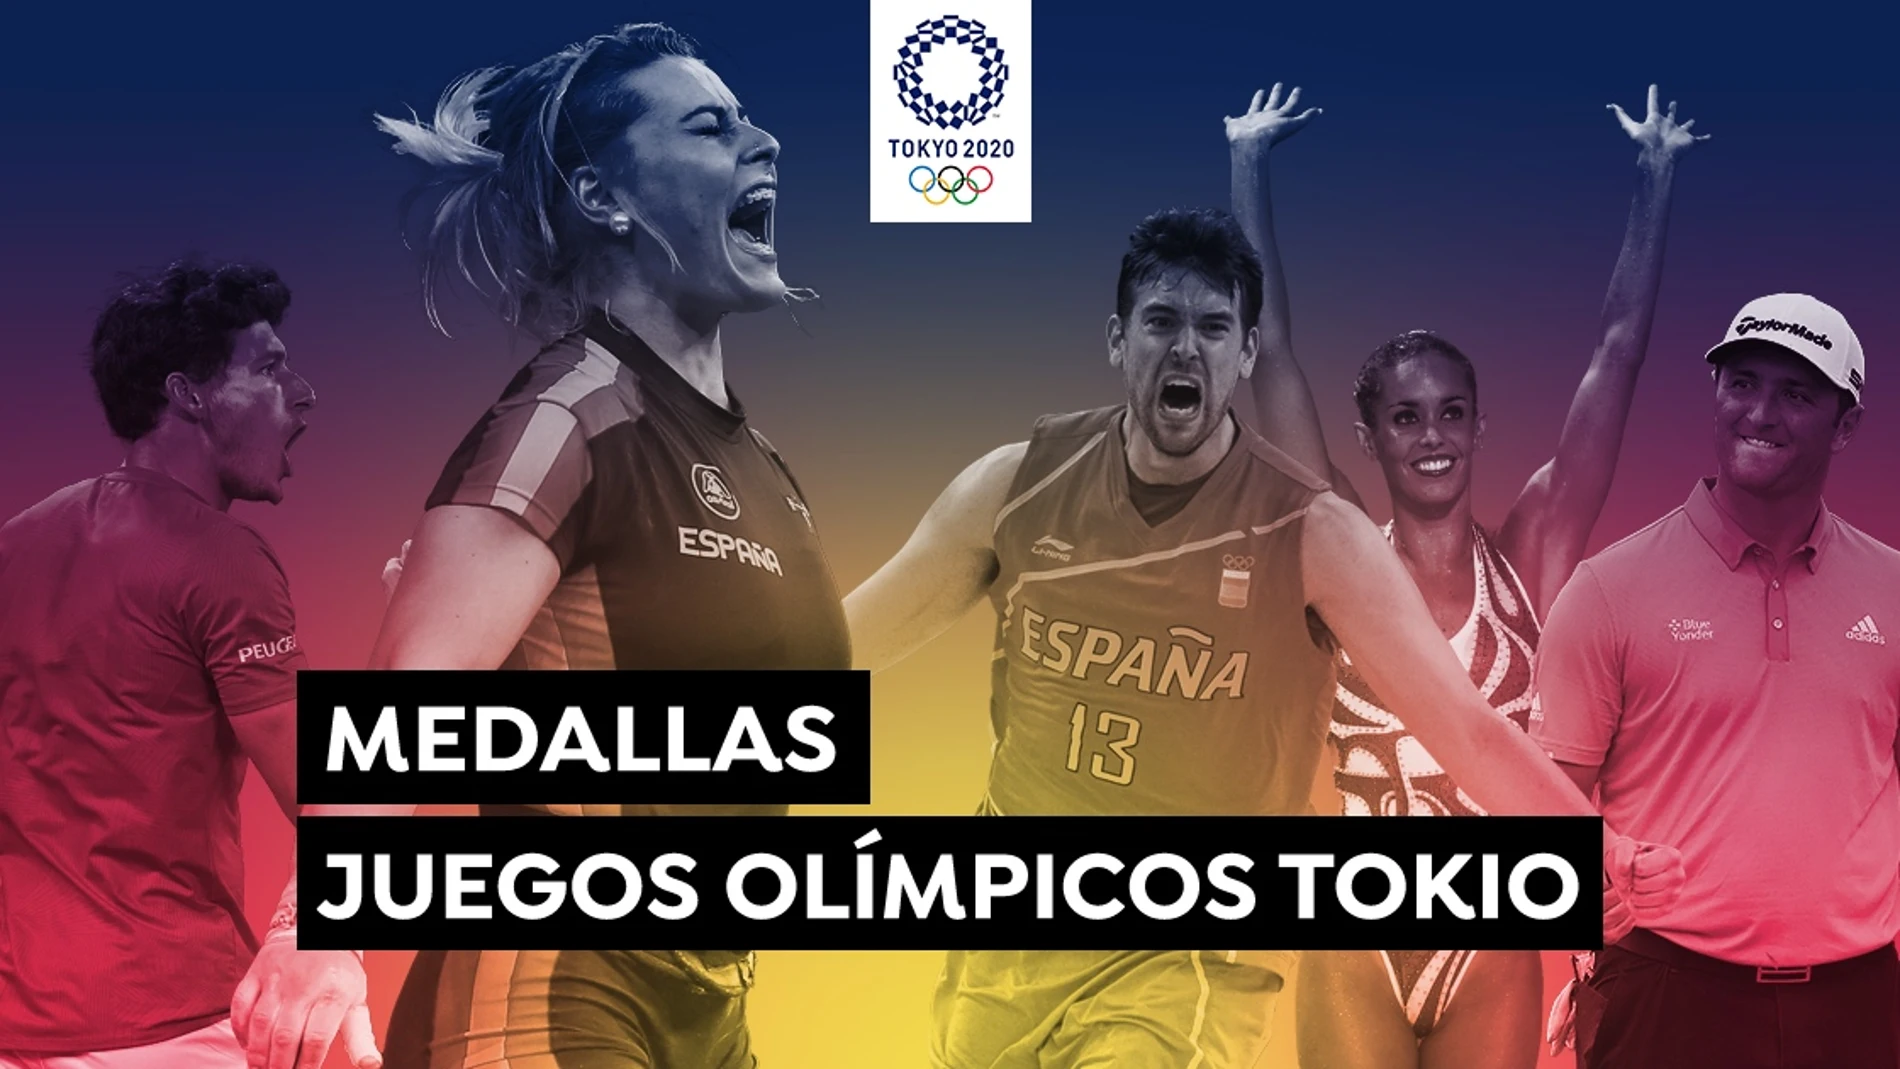 Juegos Olímpicos de Tokio 2020: Estas son las opciones a medallas de España